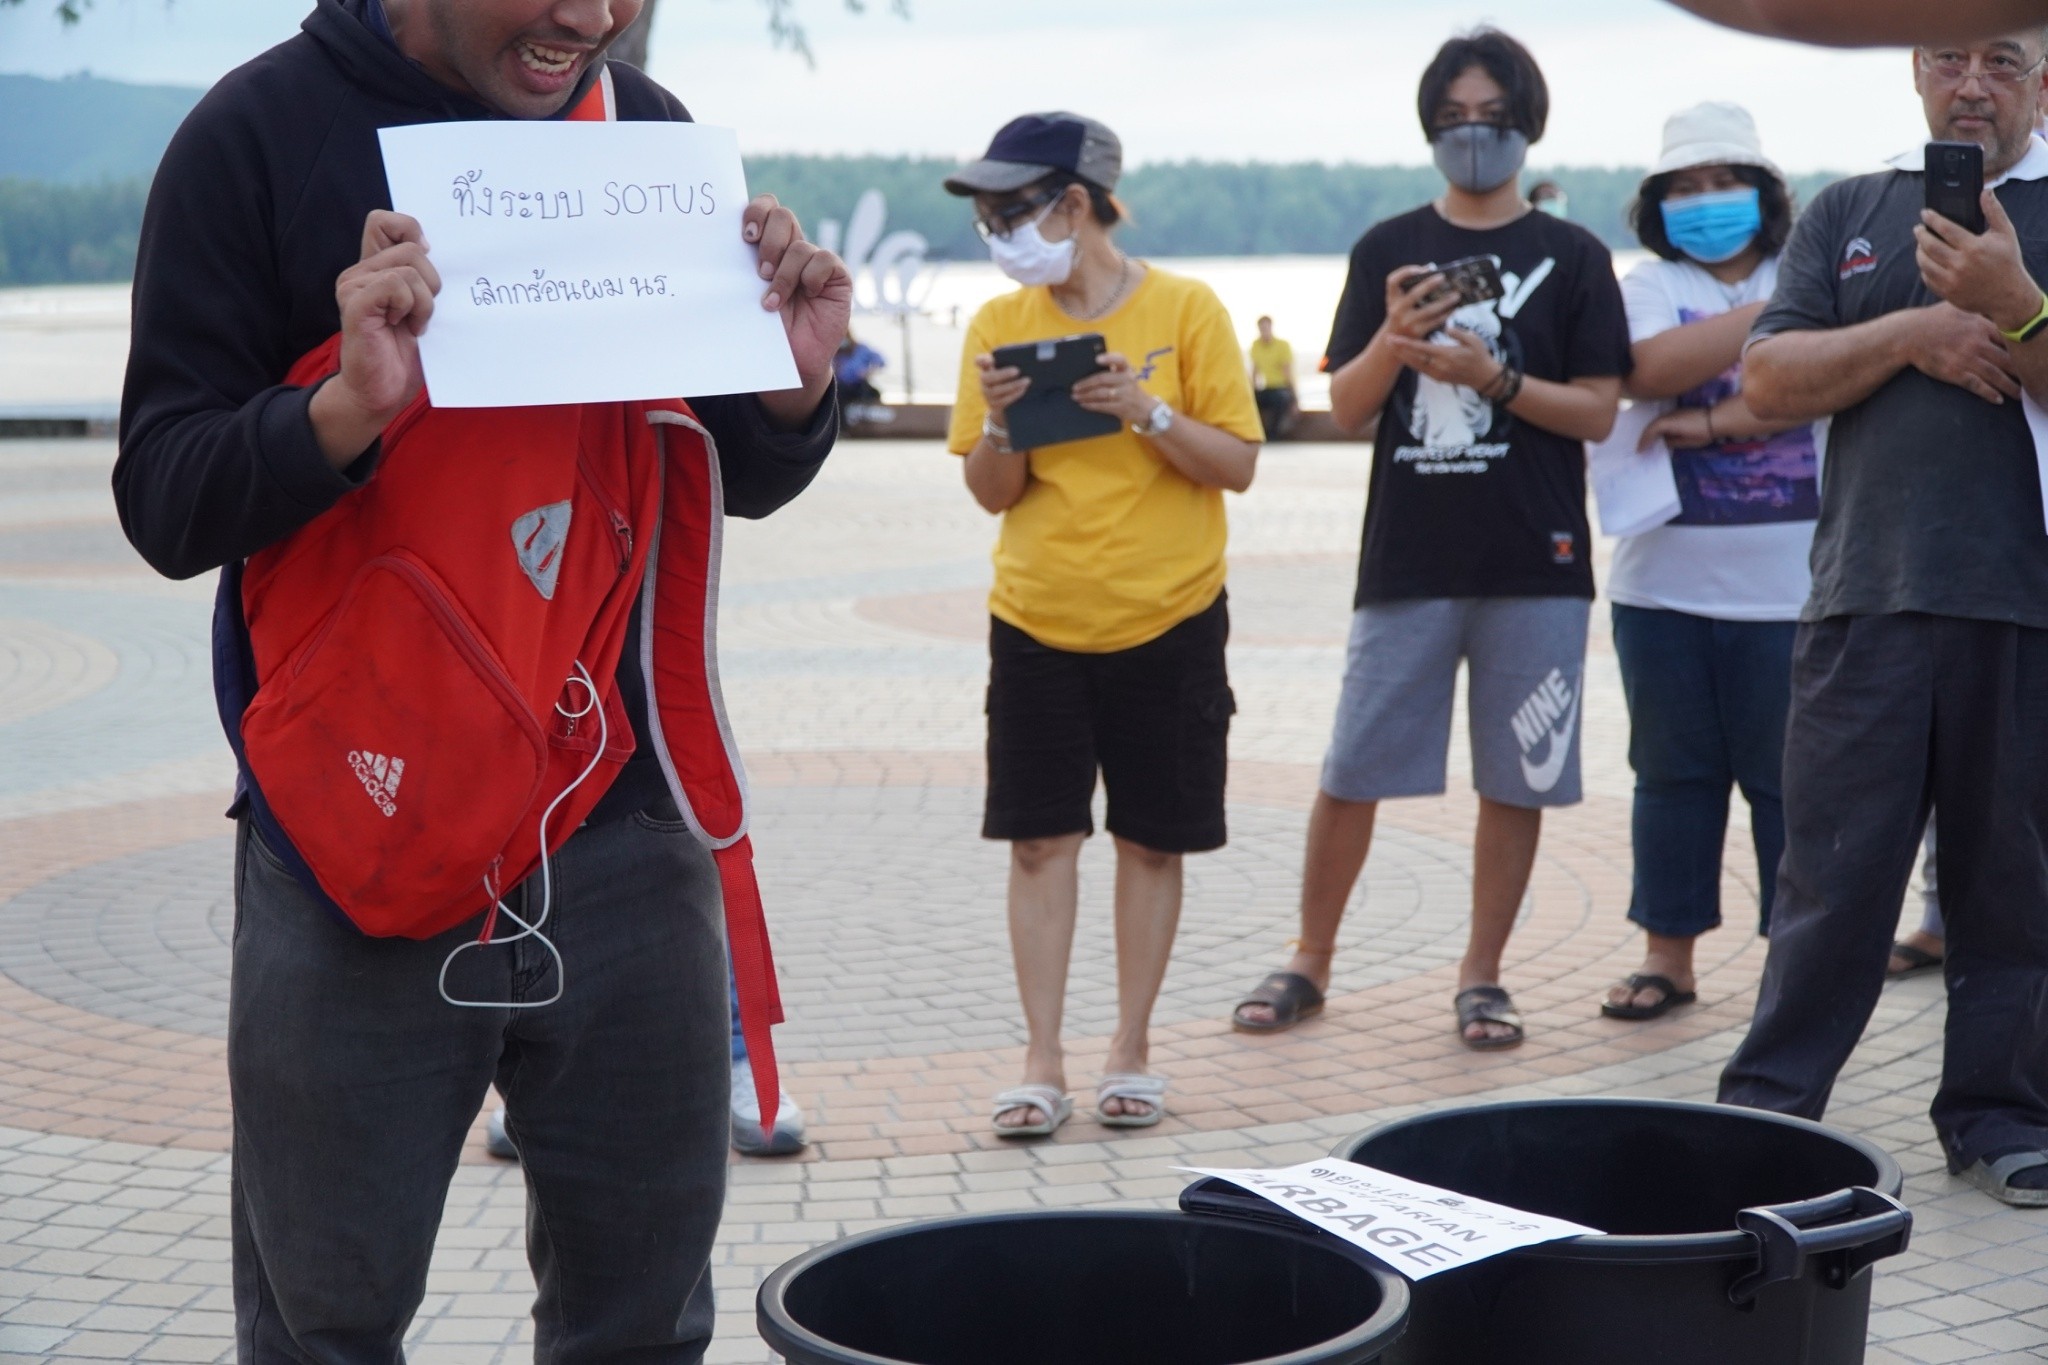 จ.สงขลา เยาวชนรวมตัวแสดงสัญลักษณ์ #สงขลาไม่เอาTOO บริเวณศาลาไทย รูปปั้นนางเงือก ริมชายหาดสมิหลา